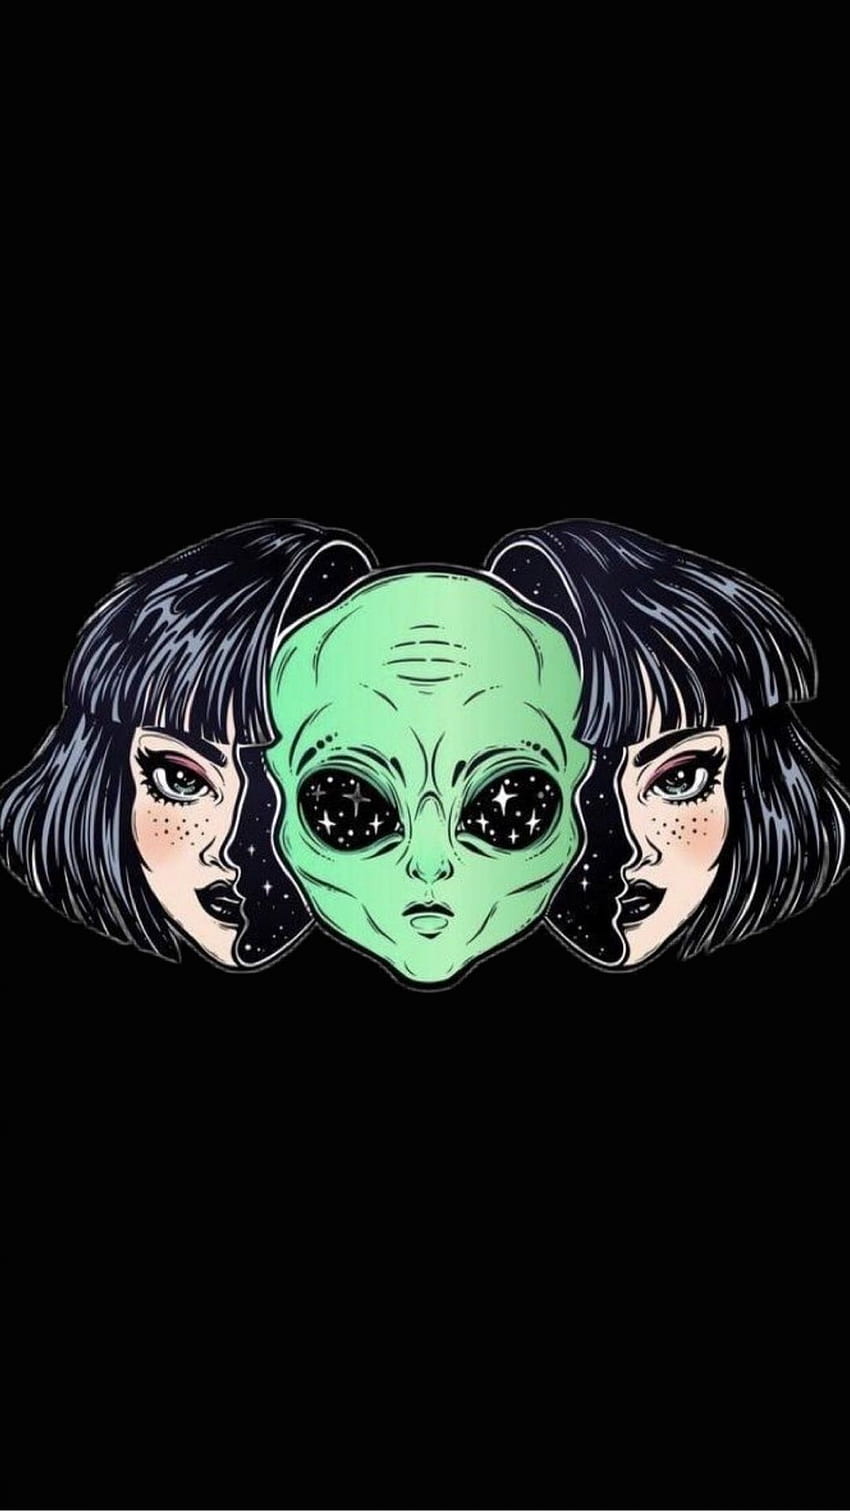 Aesthetic Cute Alien Android en 2020. Arte, Arte alienígena, Arte psicodélico y Alien alienígena fondo de pantalla del teléfono